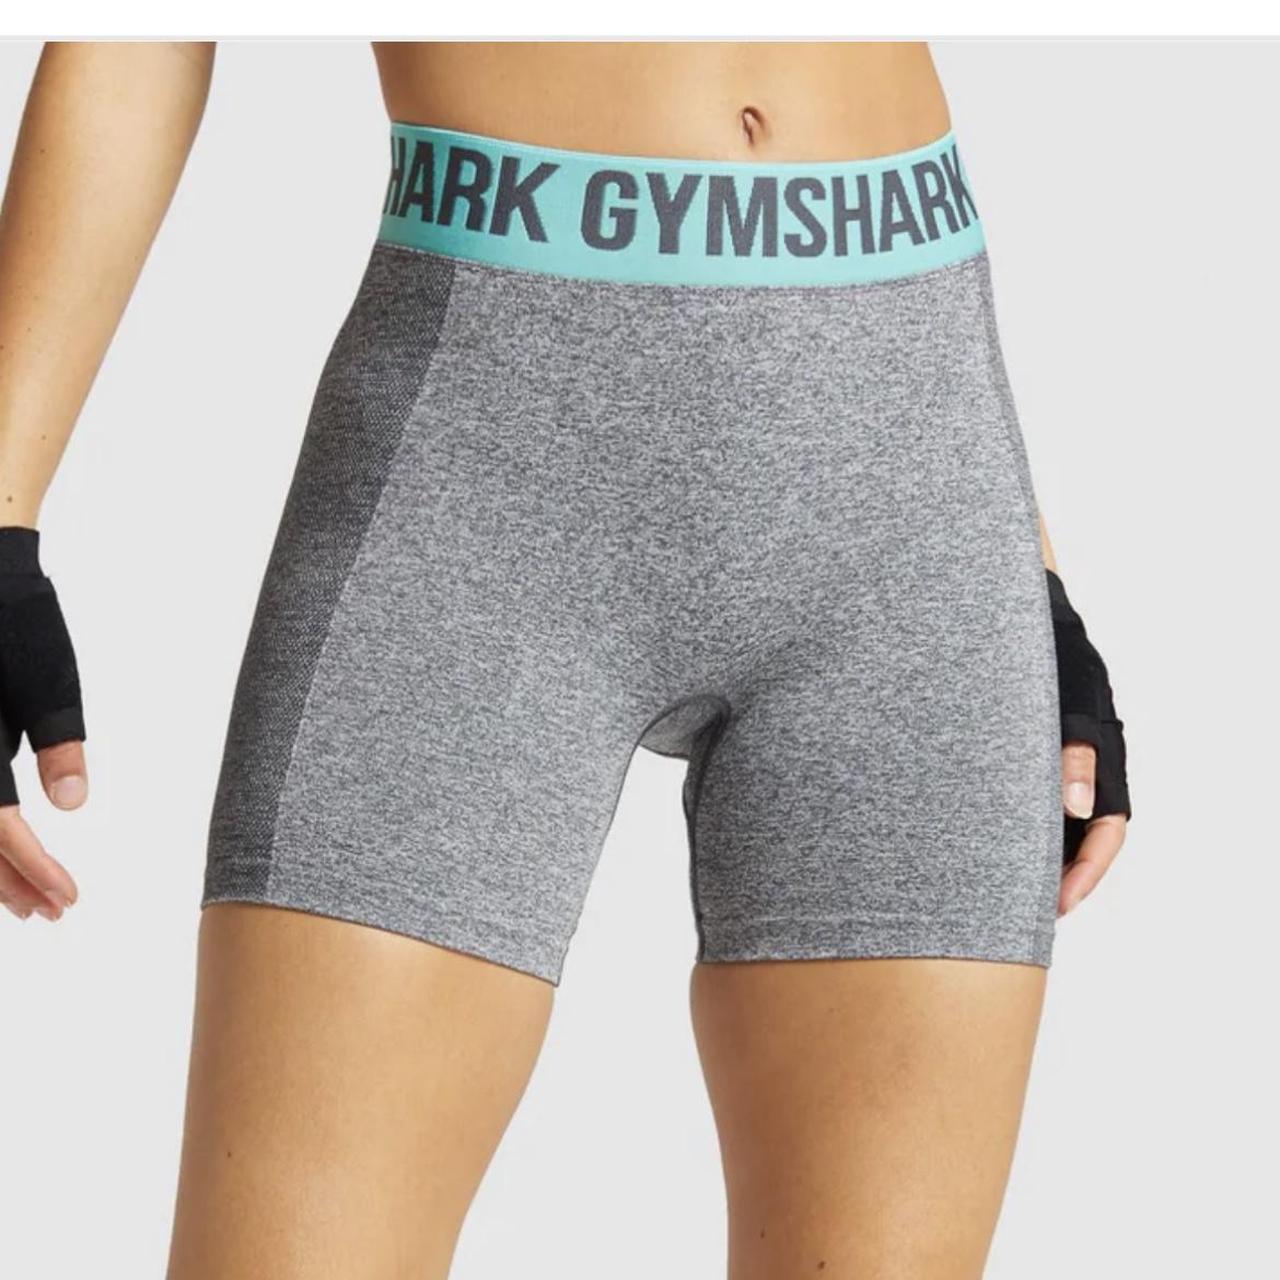 Gymshark Flex Shorts Women's Teal Grey Spell Out - Depop